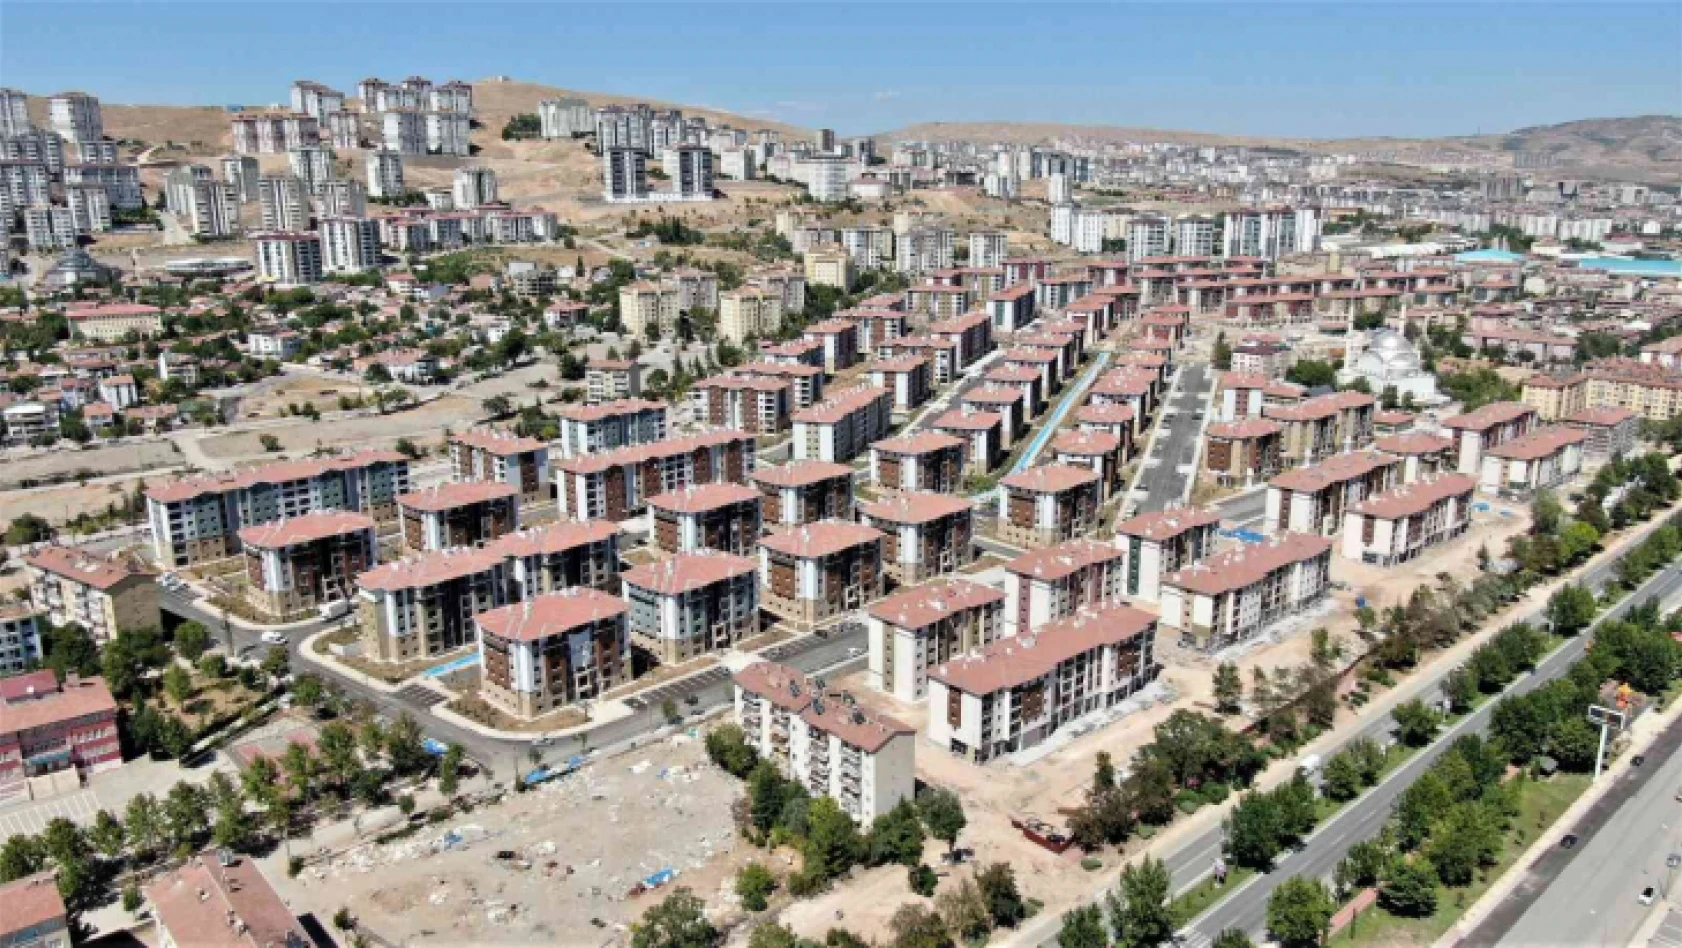 TOKİ, deprem sonrası Elazığ'ı yeniden inşa etti